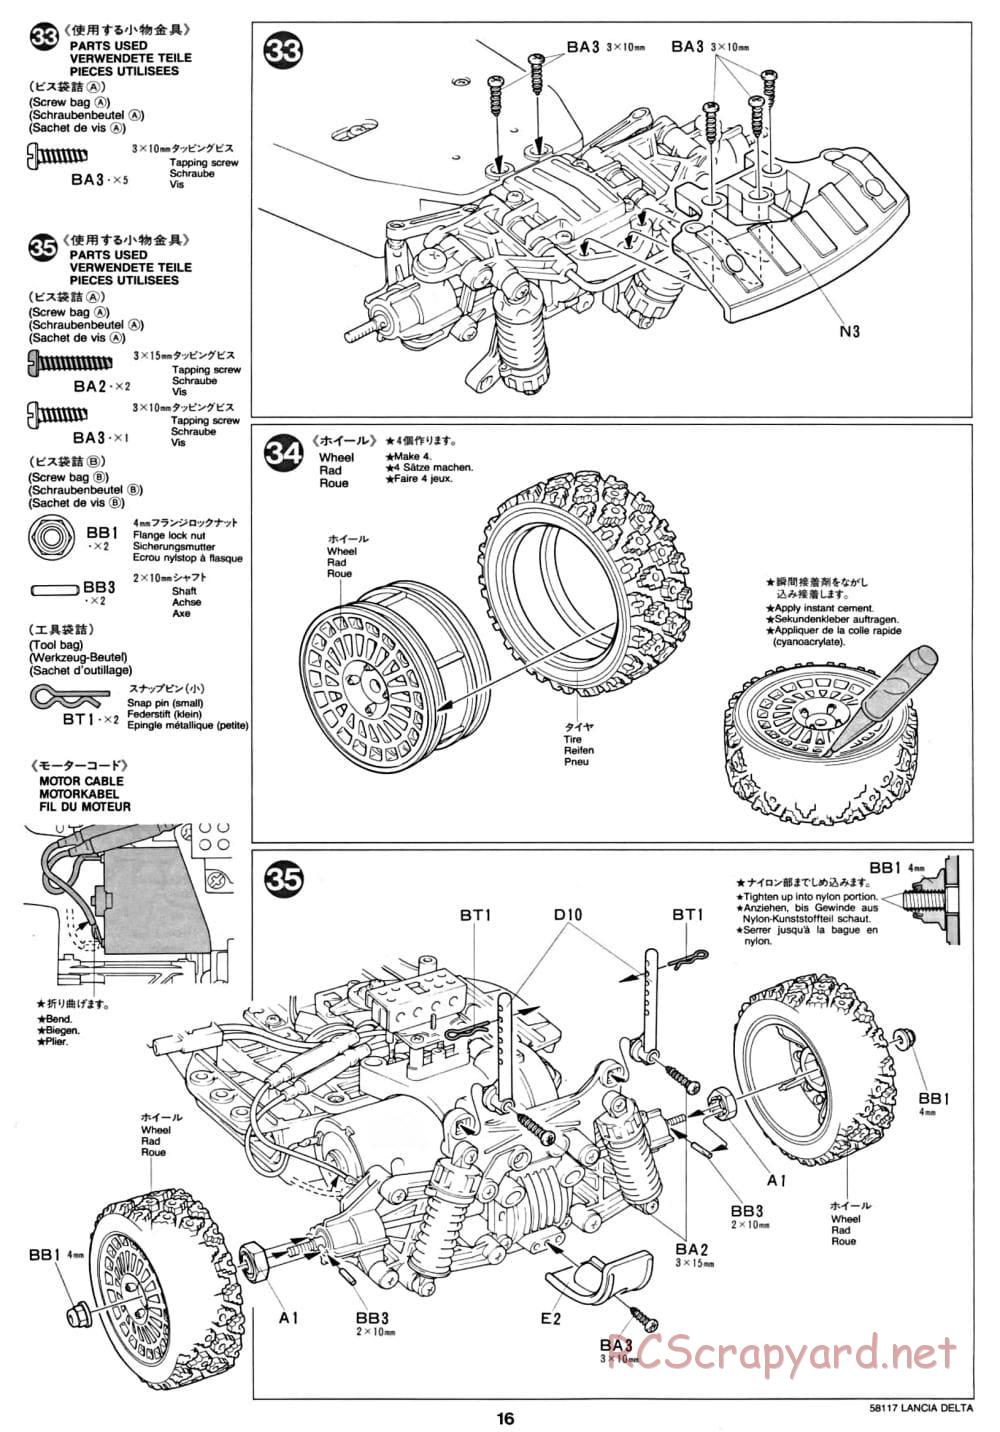 Tamiya - Lancia Delta HF Integrale - TA-01 Chassis - Manual - Page 16